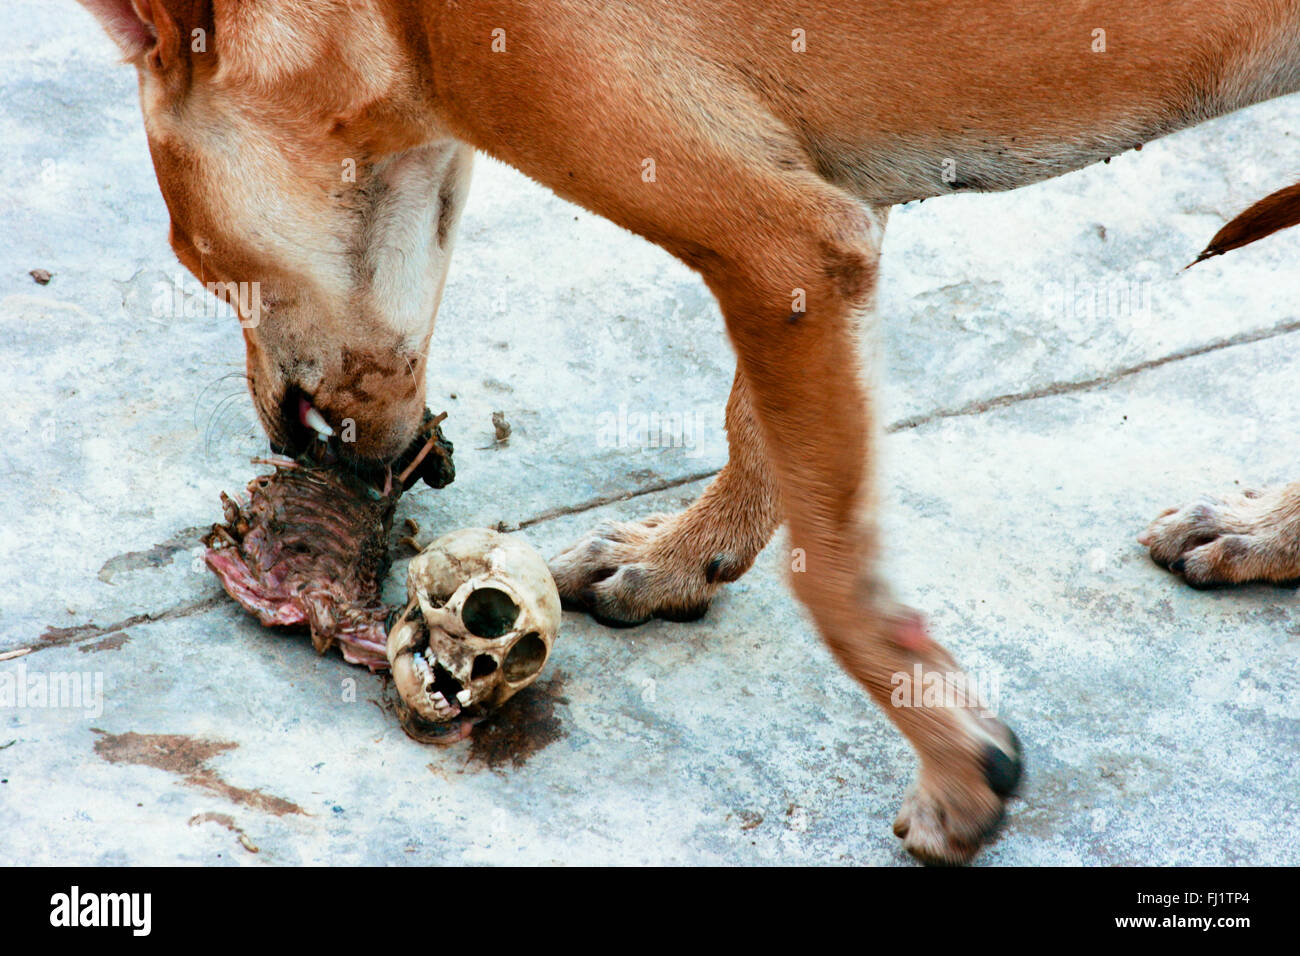 Perro comiendo el cuerpo humano en un ghat de Varanasi, en India Foto de stock